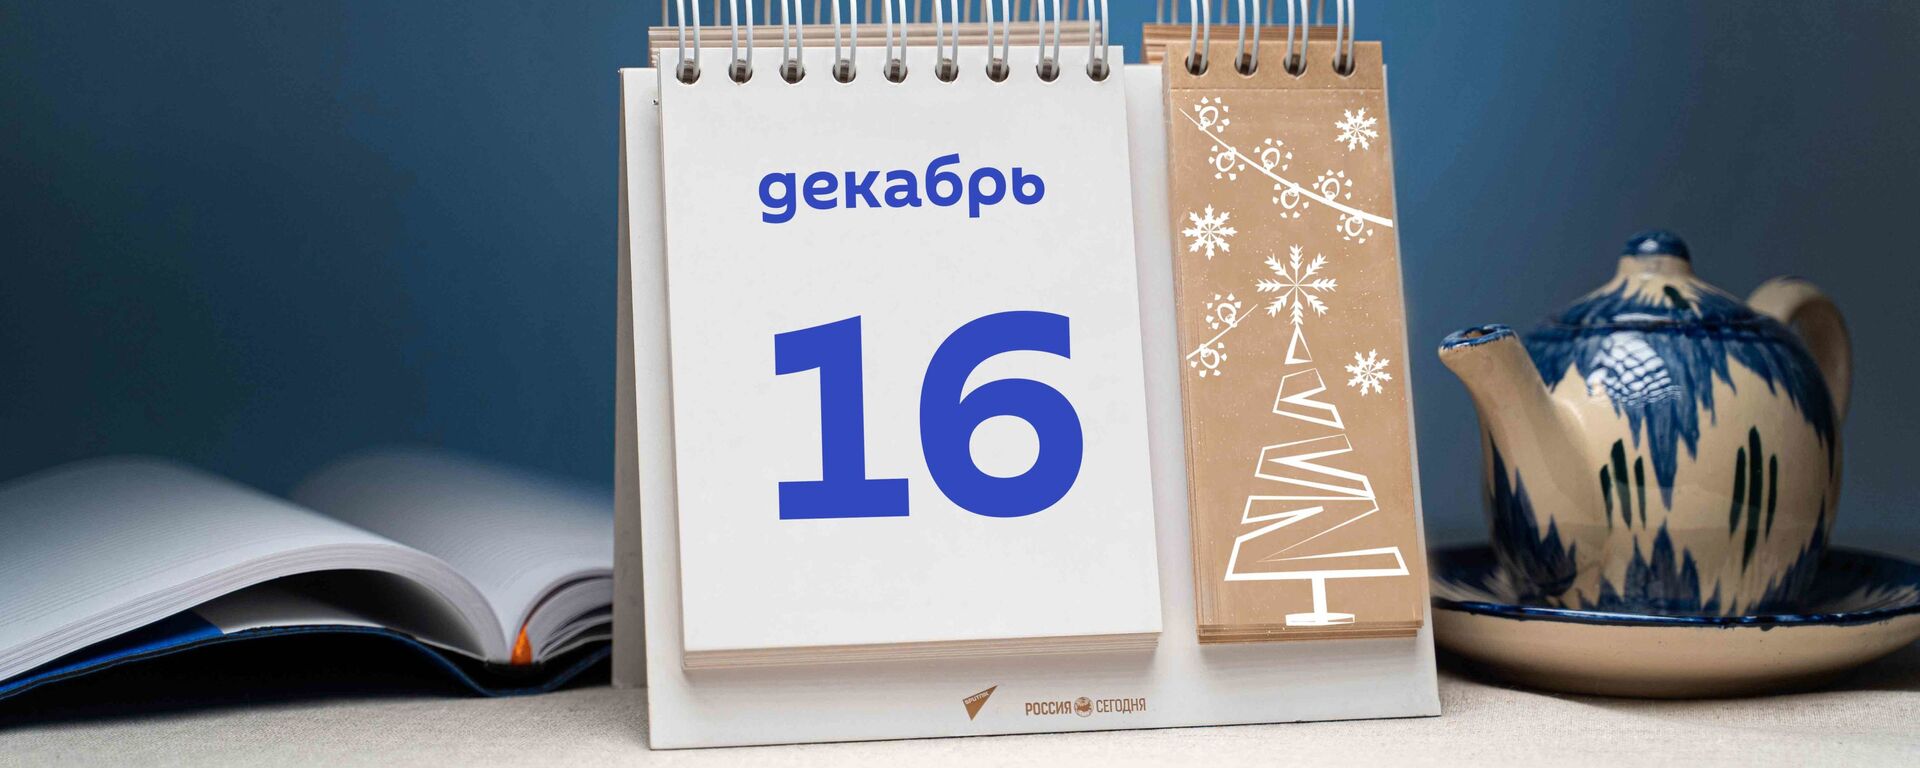 День 16 декабря  - Sputnik Тоҷикистон, 1920, 16.12.2021